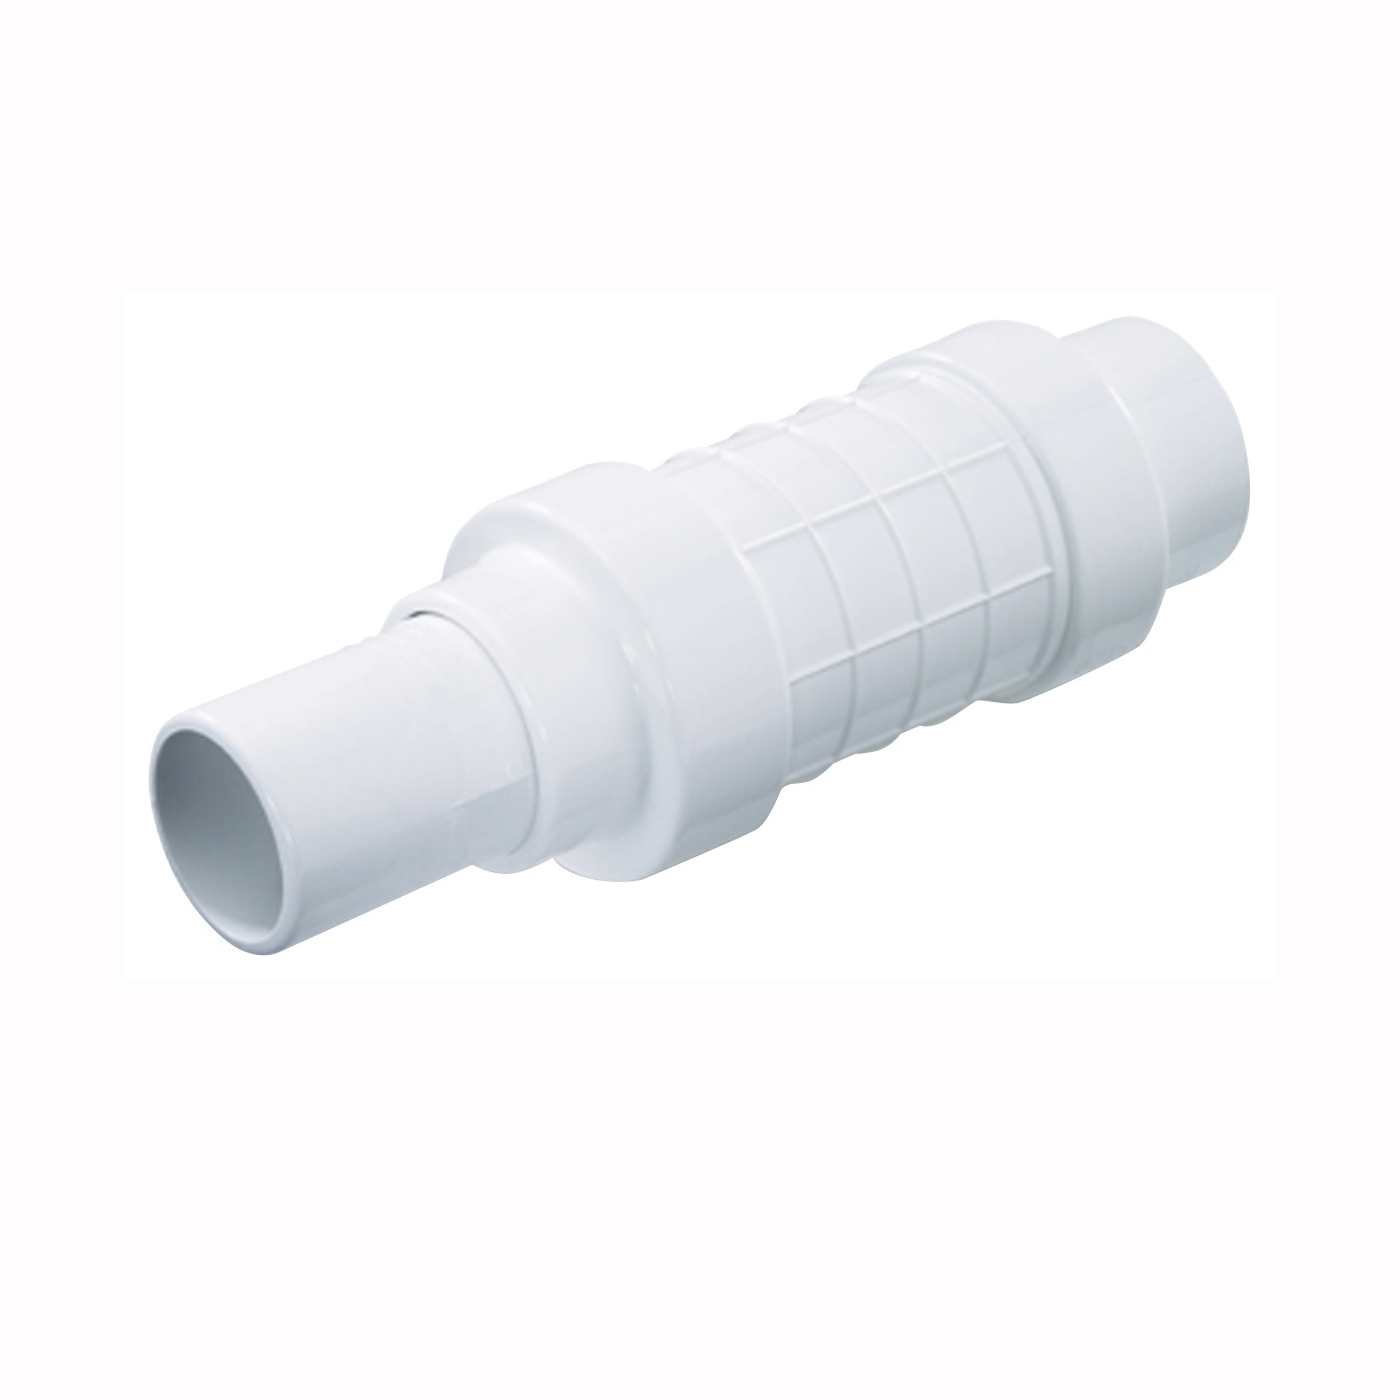 NDS Quik-Fix QF-1000 Pipe Repair Coupling, 1 in, Socket x Spigot, White, SCH 40 Schedule, 150 psi Pressure